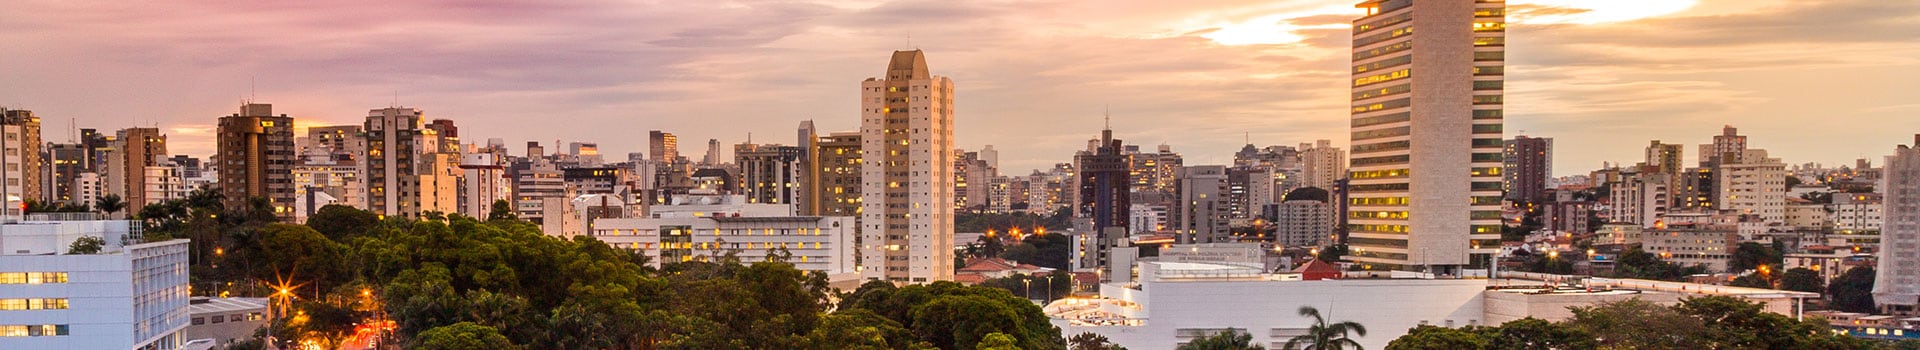 Rio de janeiro - Belo horizonte